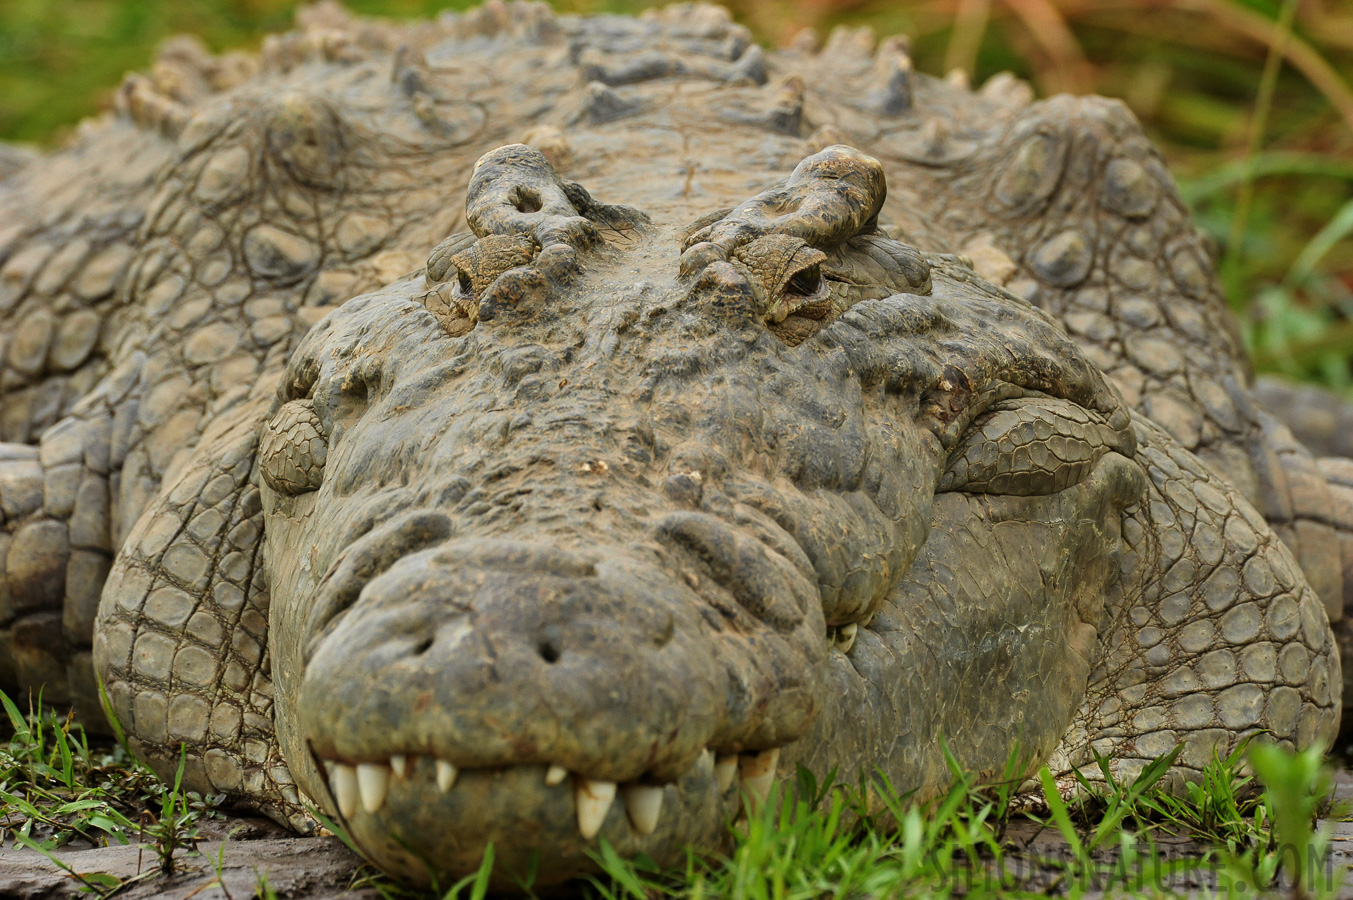 Crocodylus niloticus pauciscutatus [550 mm, 1/1250 sec at f / 9.0, ISO 2000]